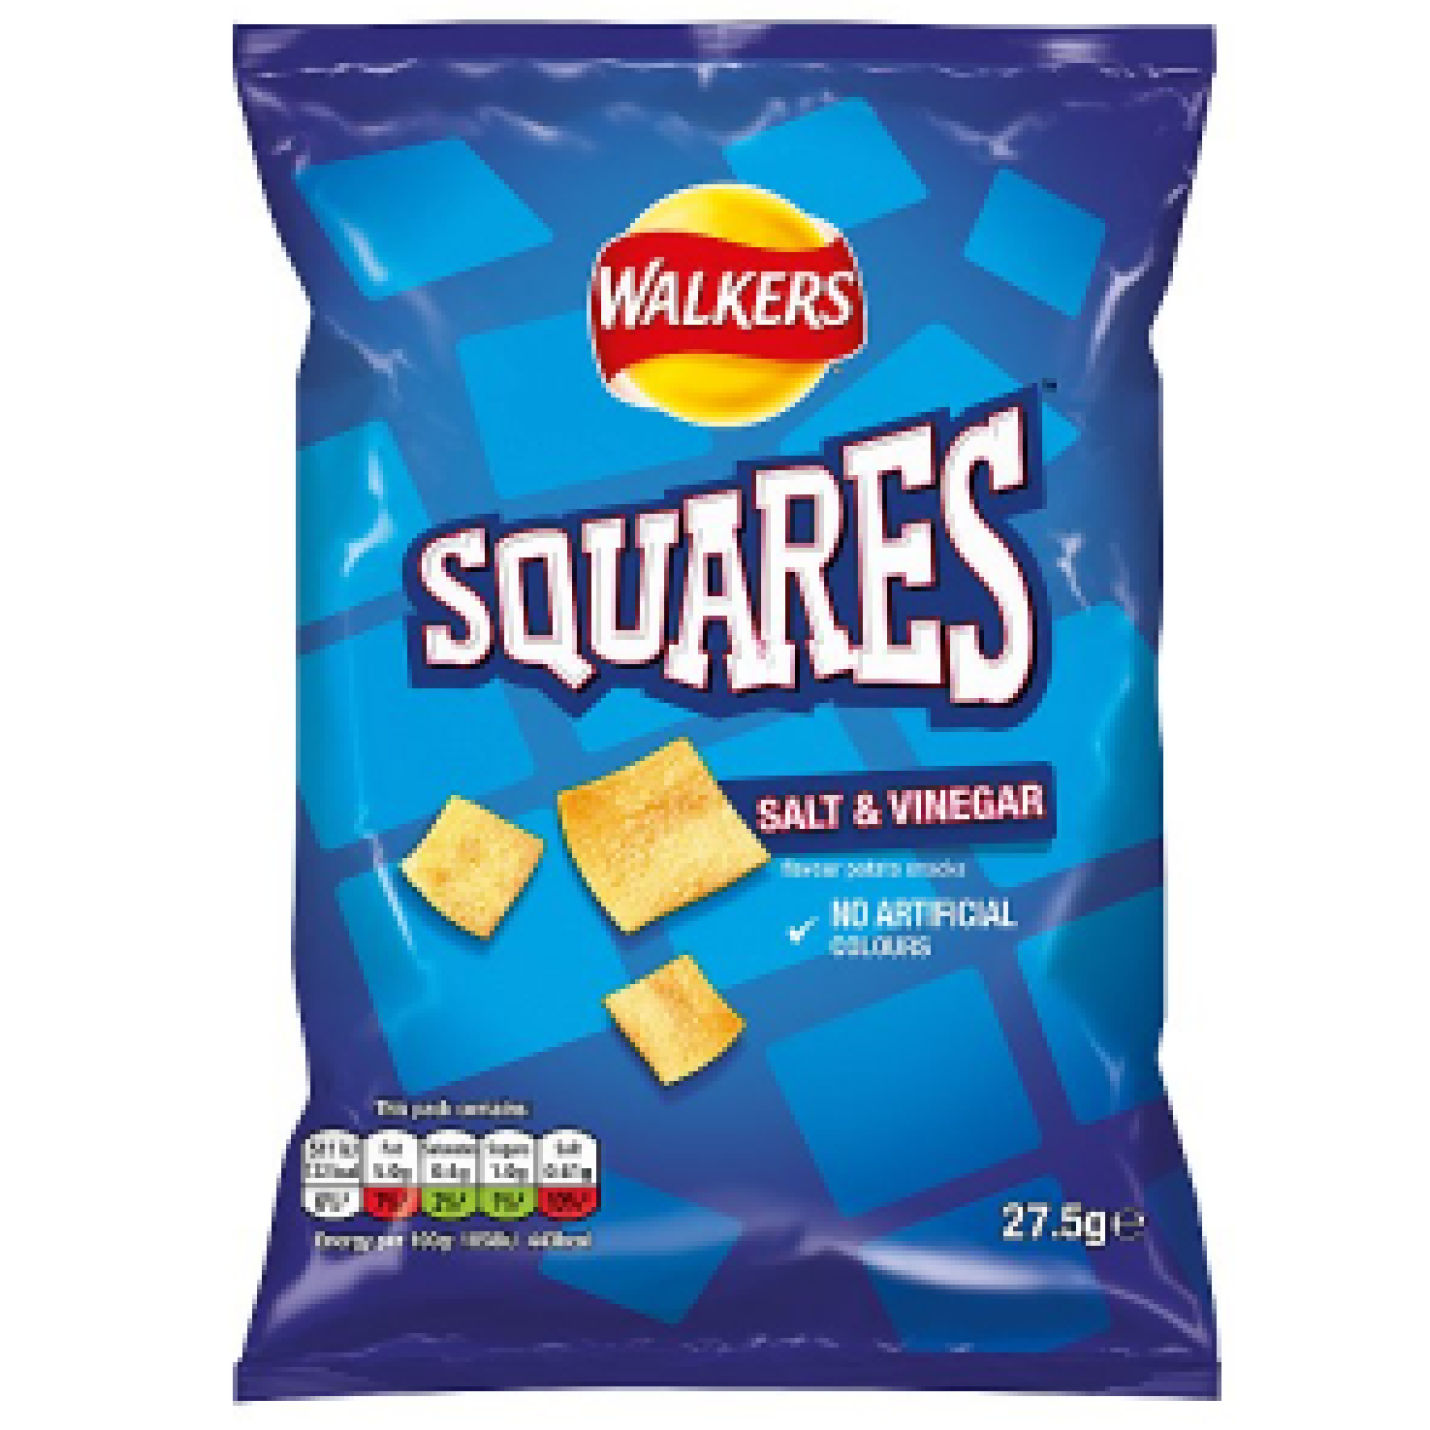 Walkers Squares Salt and Vinegar 27.5g